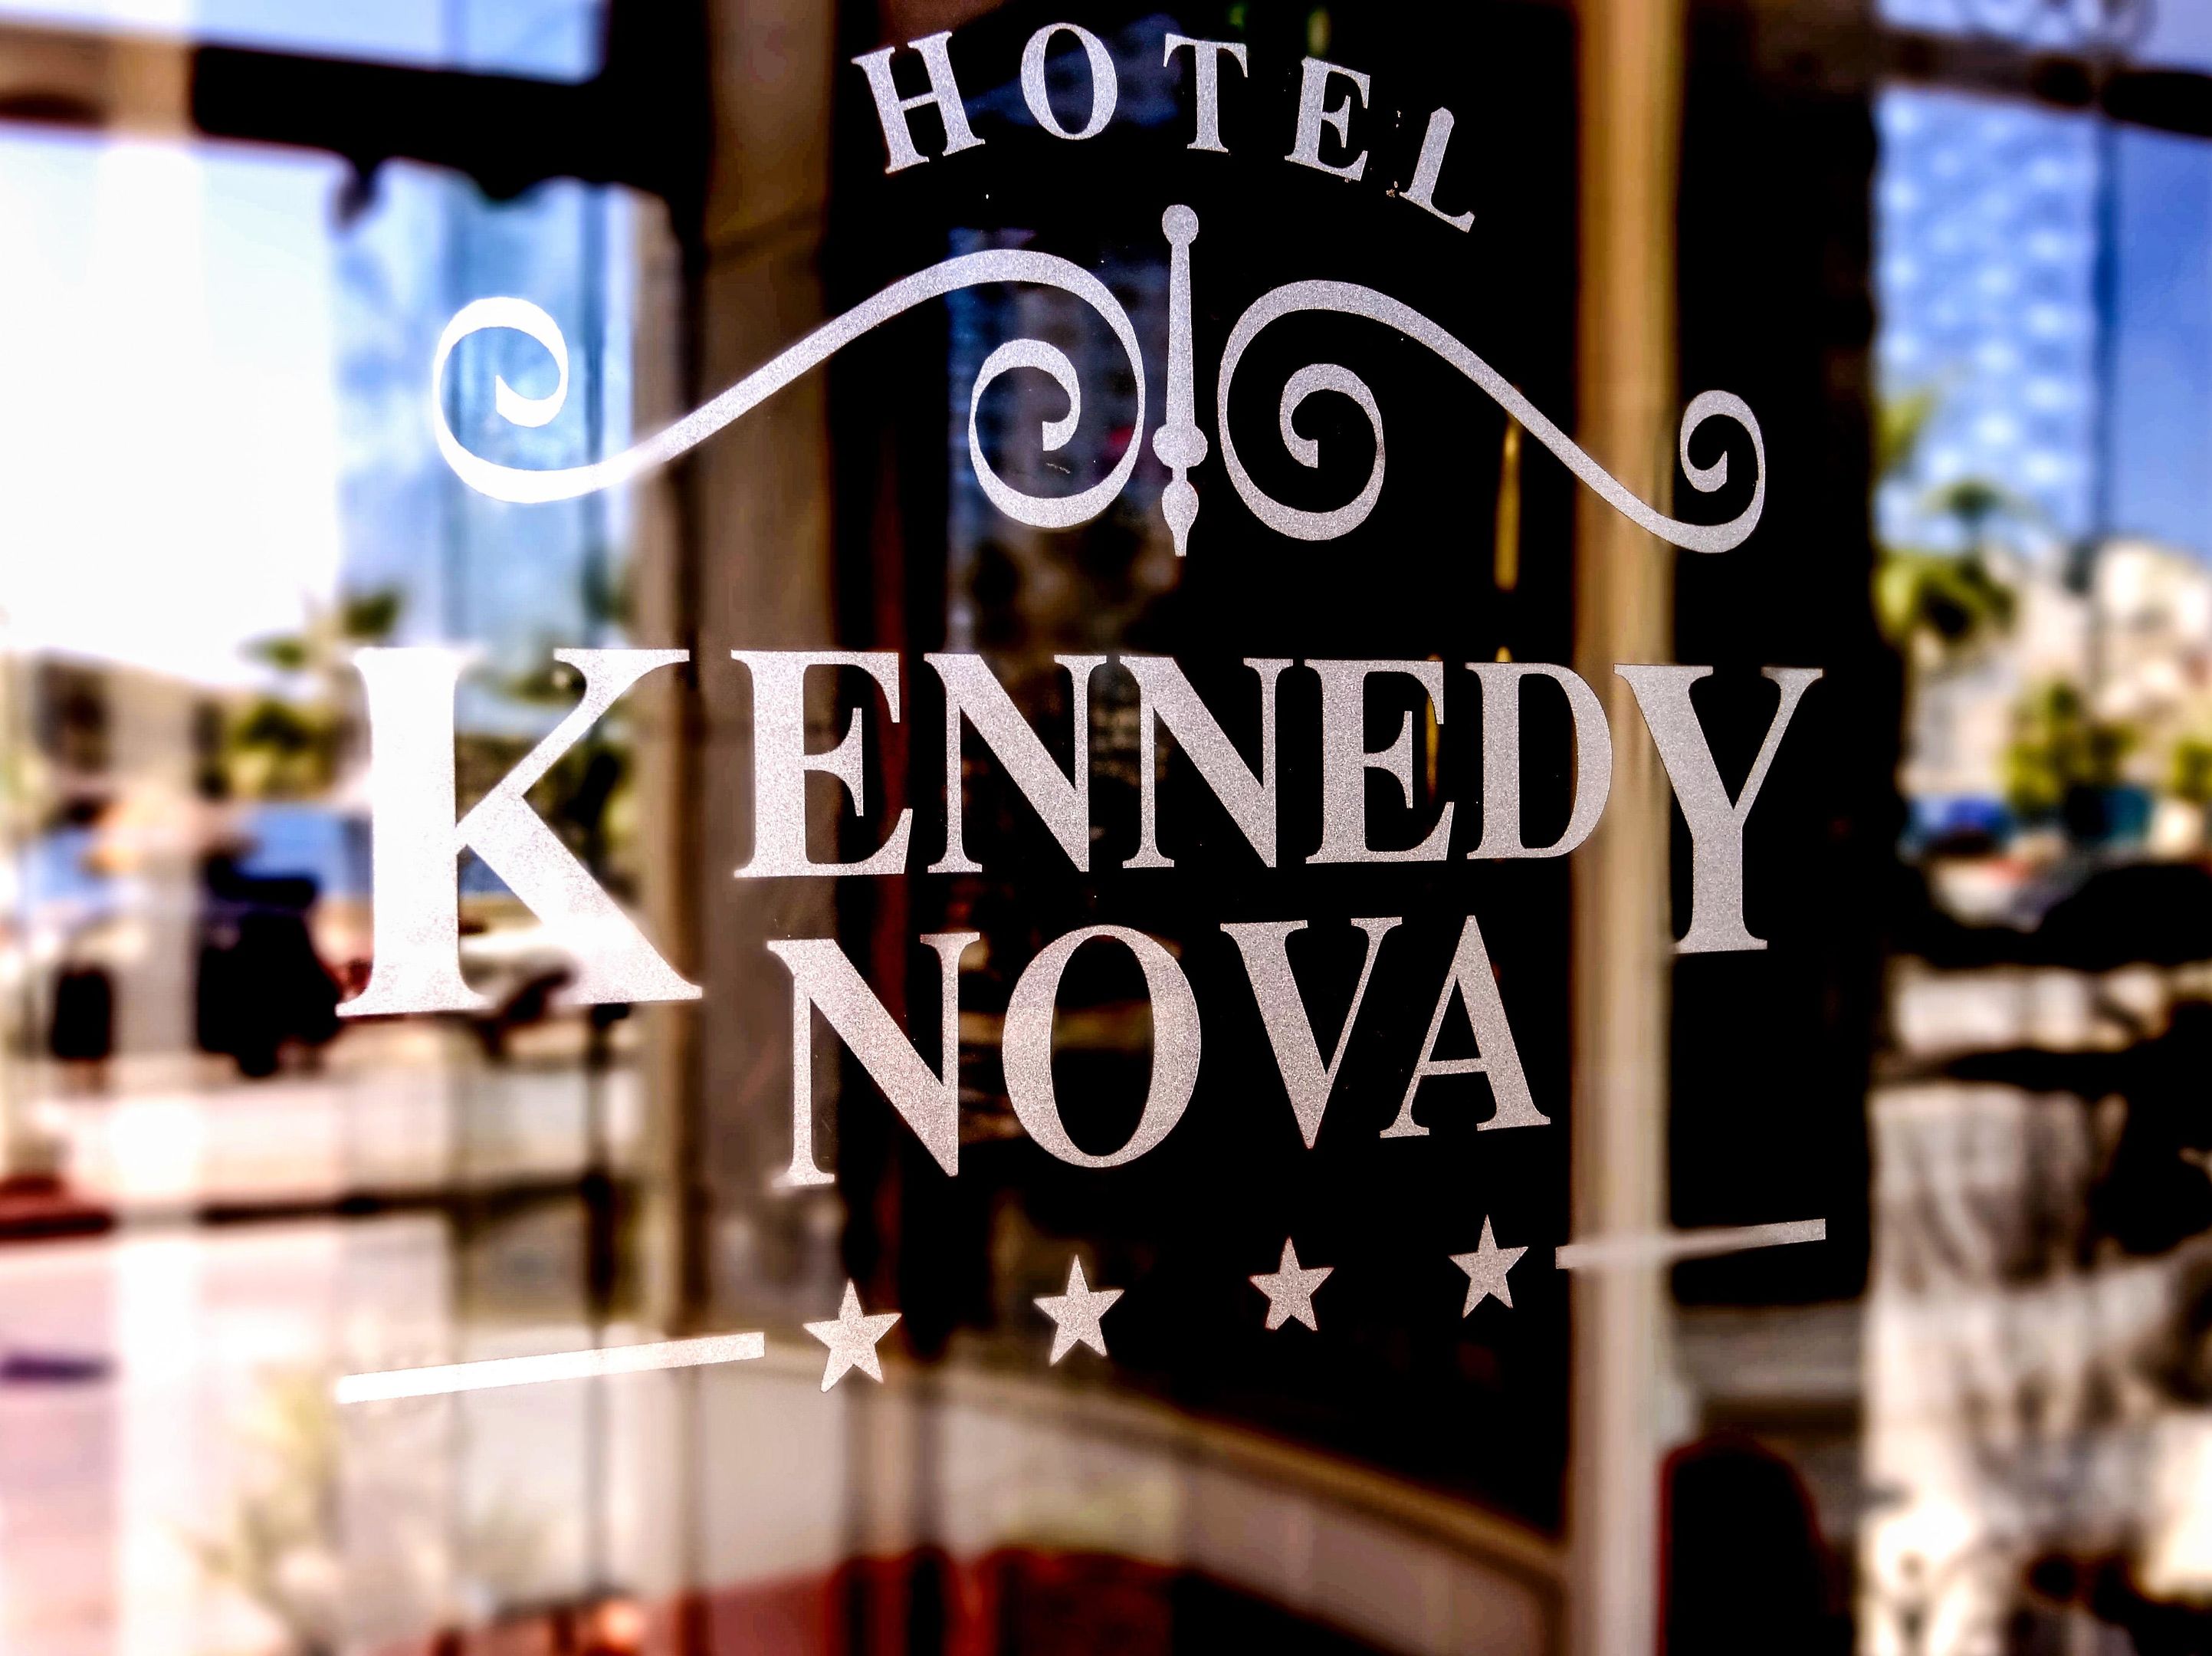 Kennedy Nova Hotel